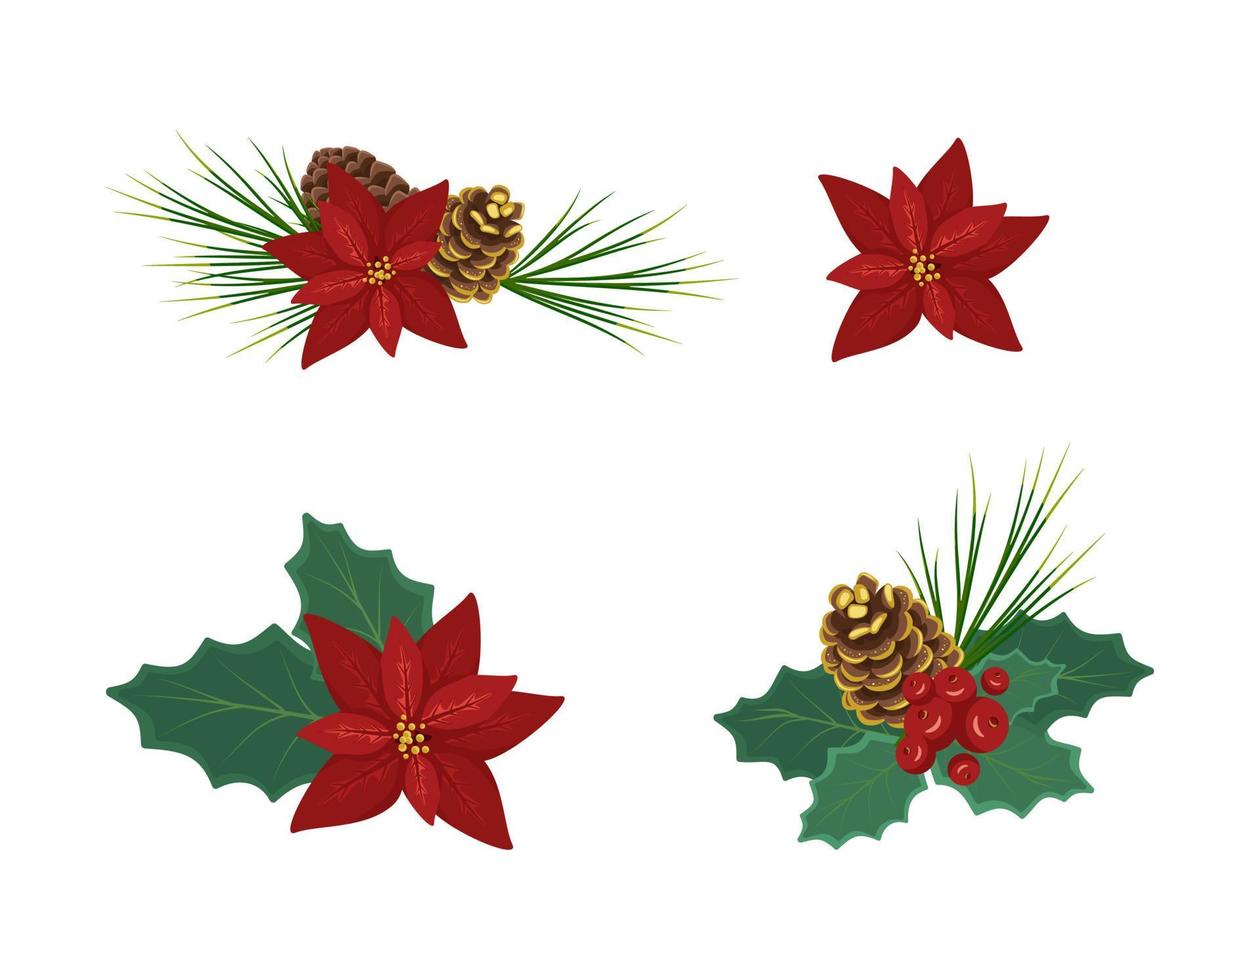 conjunto de composiciones florísticas navideñas, decoraciones festivas de invierno para año nuevo y regalo. flor de nochebuena roja navideña con agujas de pino, hojas de acebo y cono dorado vector